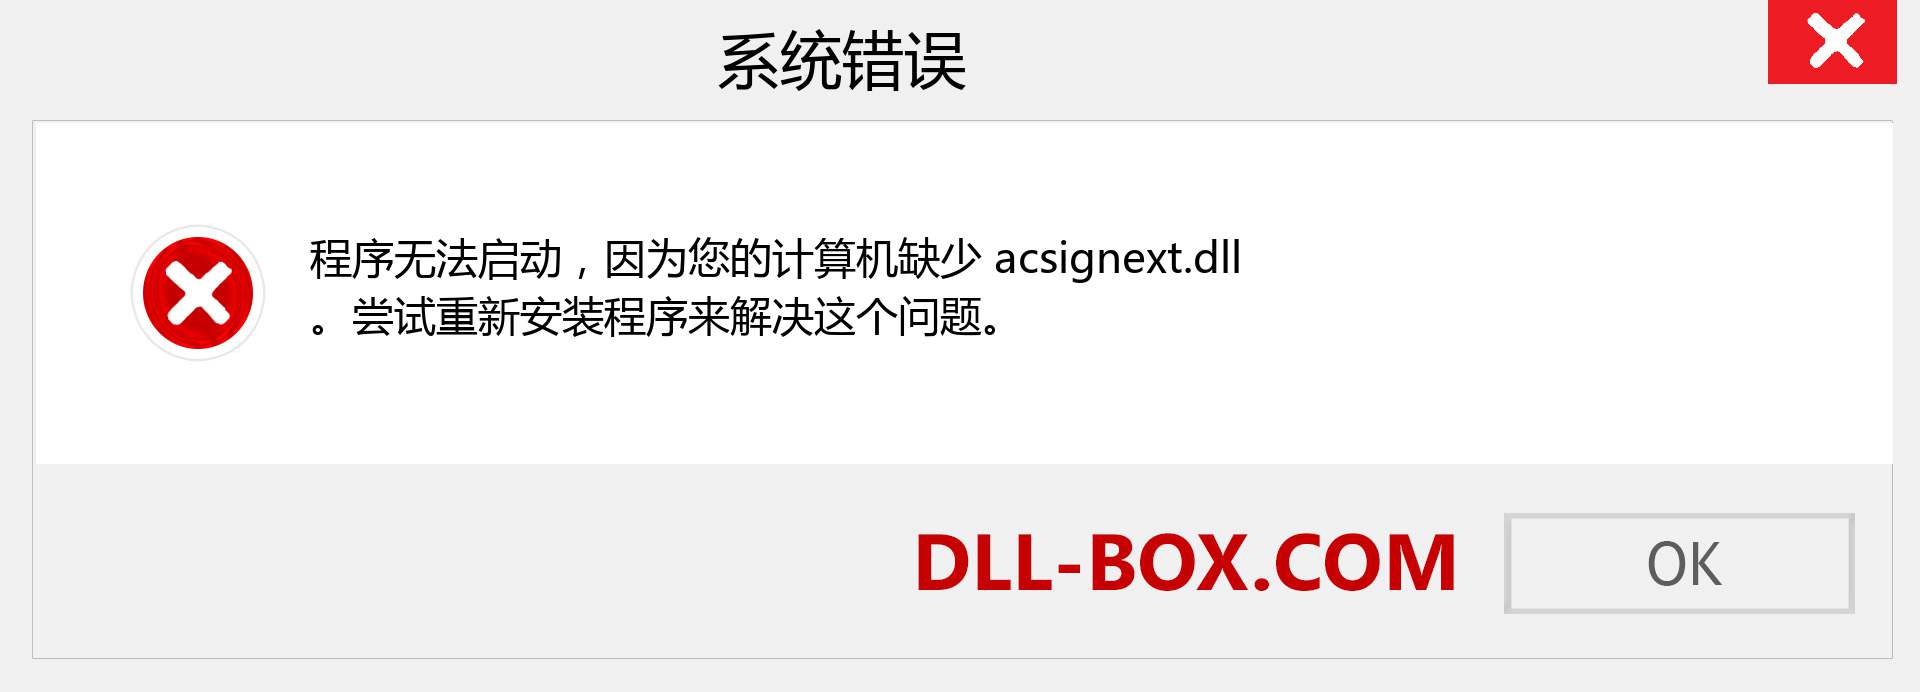 acsignext.dll 文件丢失？。 适用于 Windows 7、8、10 的下载 - 修复 Windows、照片、图像上的 acsignext dll 丢失错误